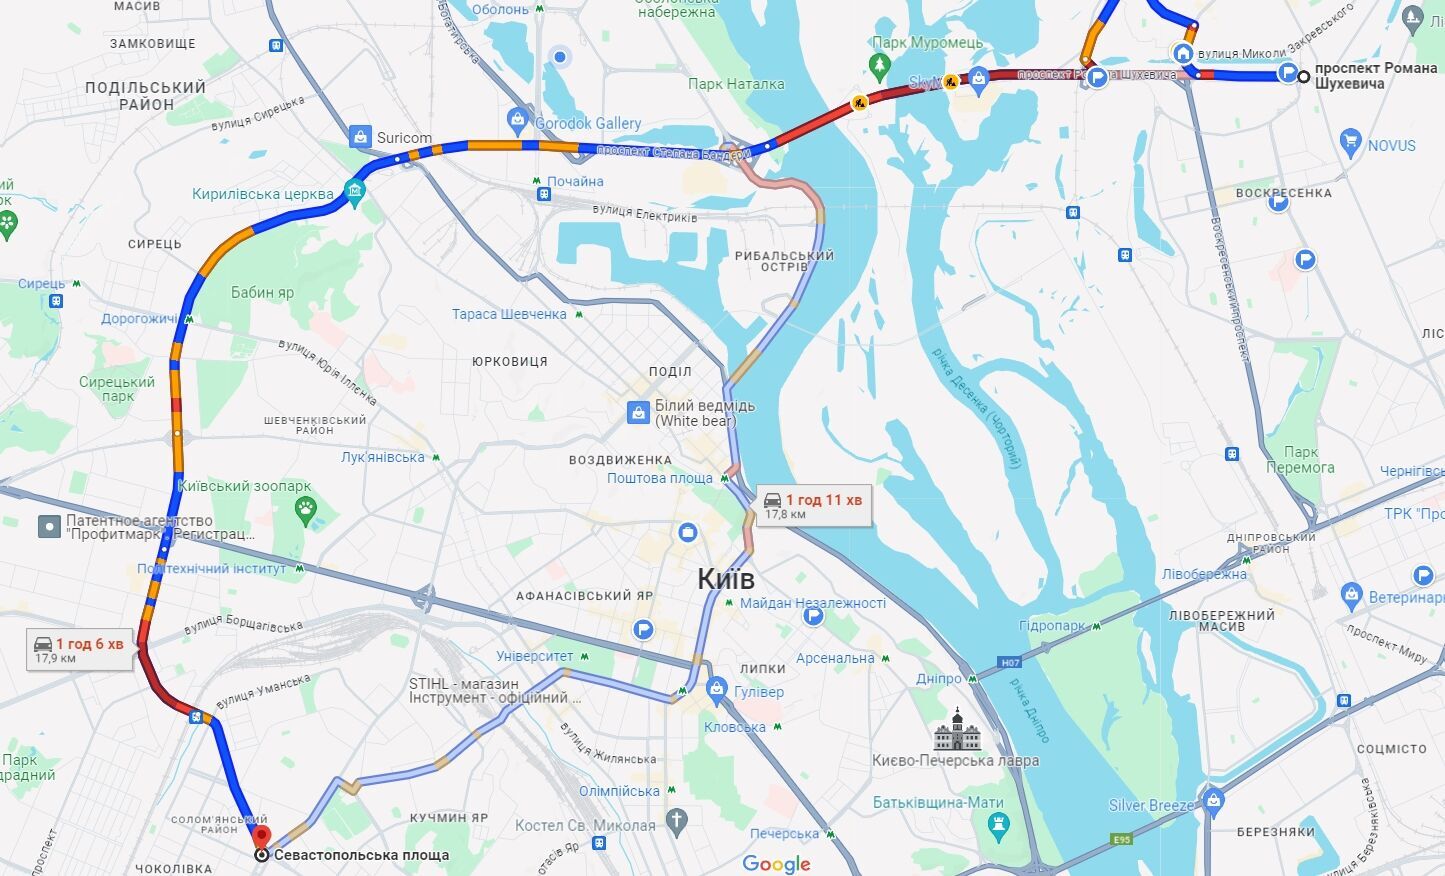 В Киеве утренние пробки усложнили движение на дорогах: где "тянутся" машины. Карта